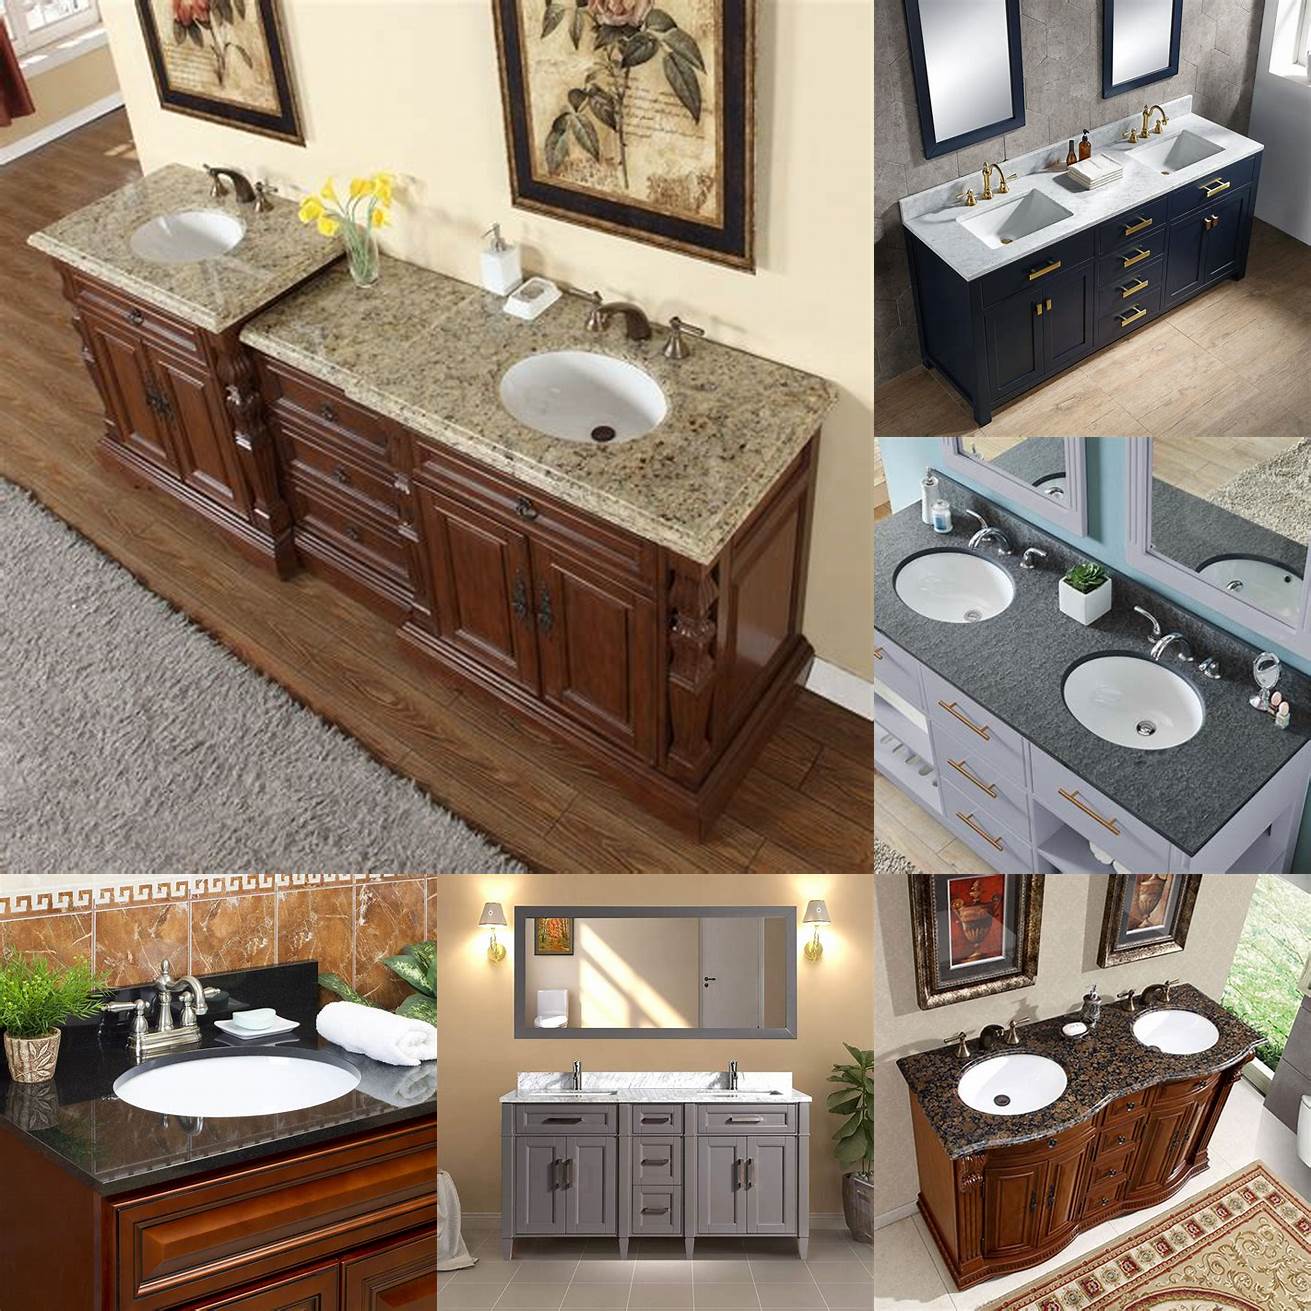 4 Double sink granite bathroom vanity